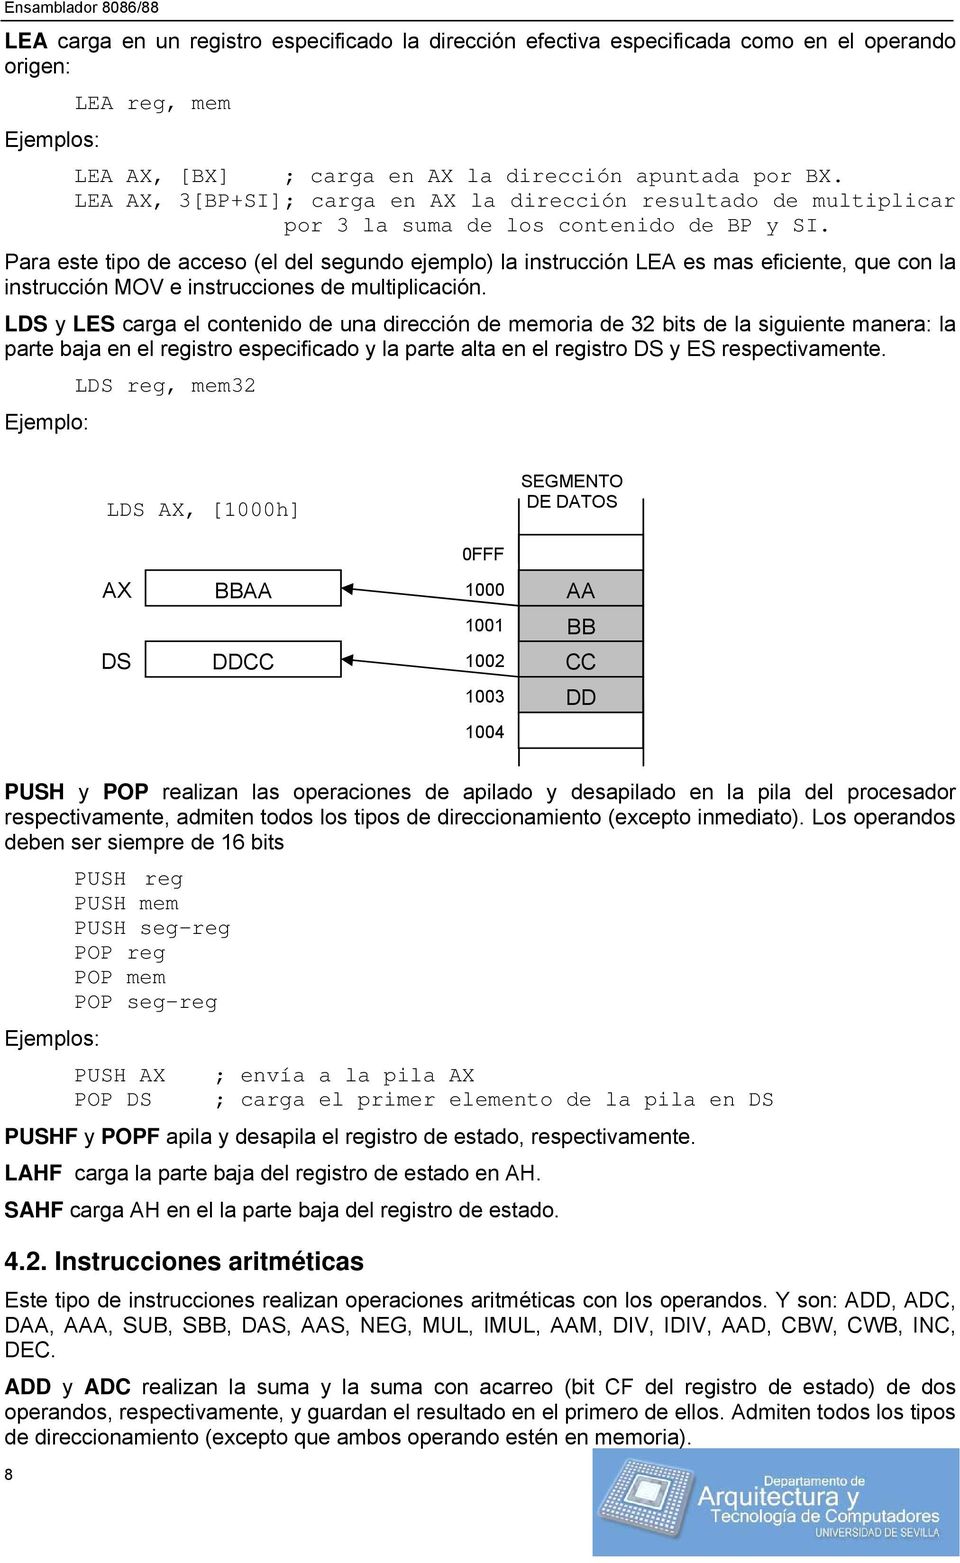 Para este tipo de acceso (el del segundo ejemplo) la instrucción LEA es mas eficiente, que con la instrucción MOV e instrucciones de multiplicación.